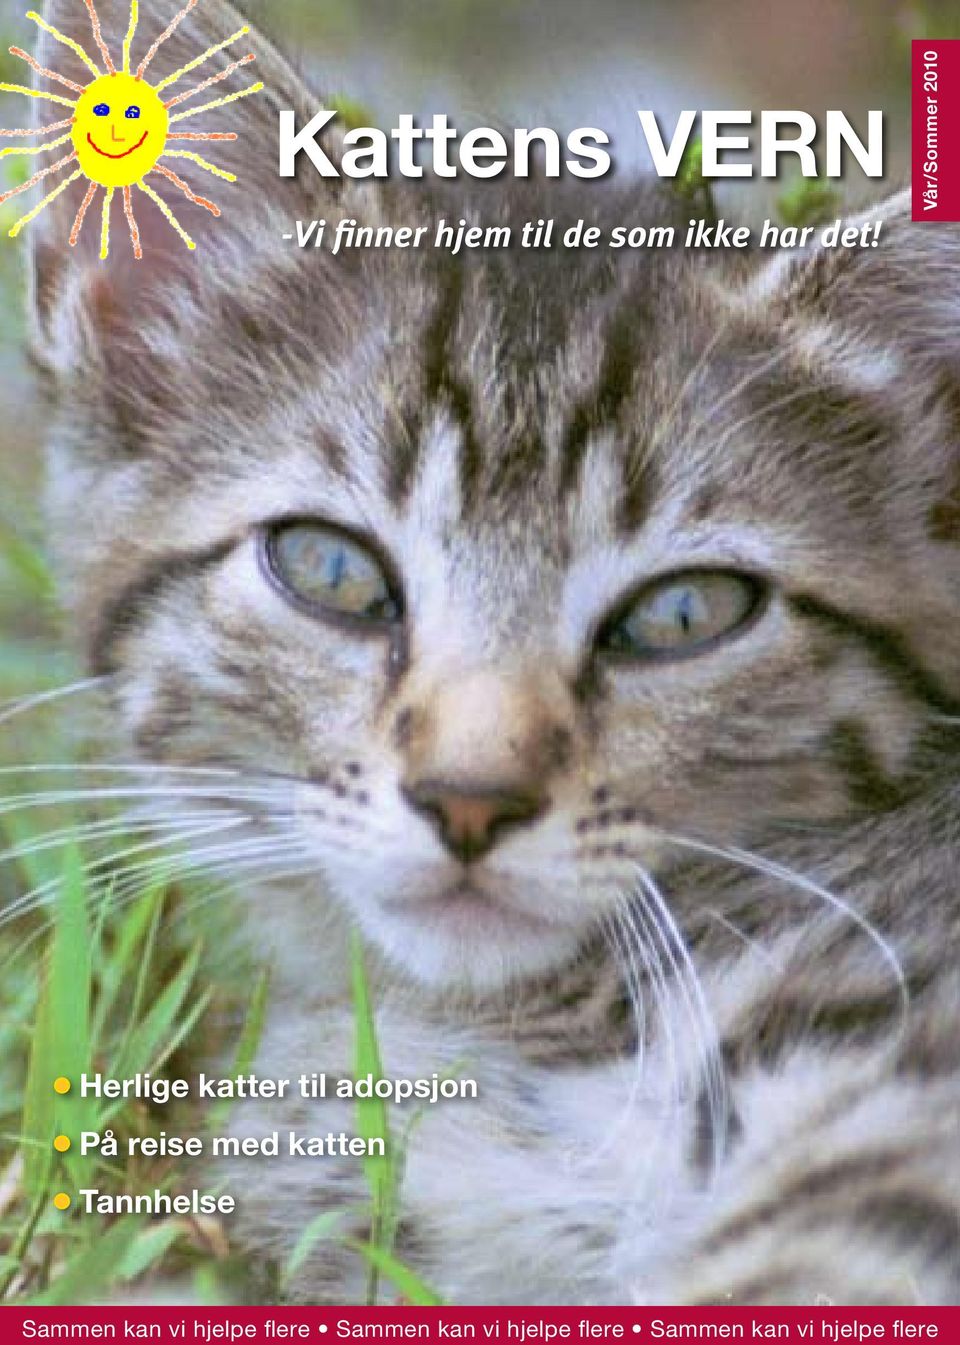 Kattens VERN. -Vi finner hjem til de som ikke har det! Herlige katter til  adopsjon På reise med katten Tannhelse - PDF Gratis nedlasting